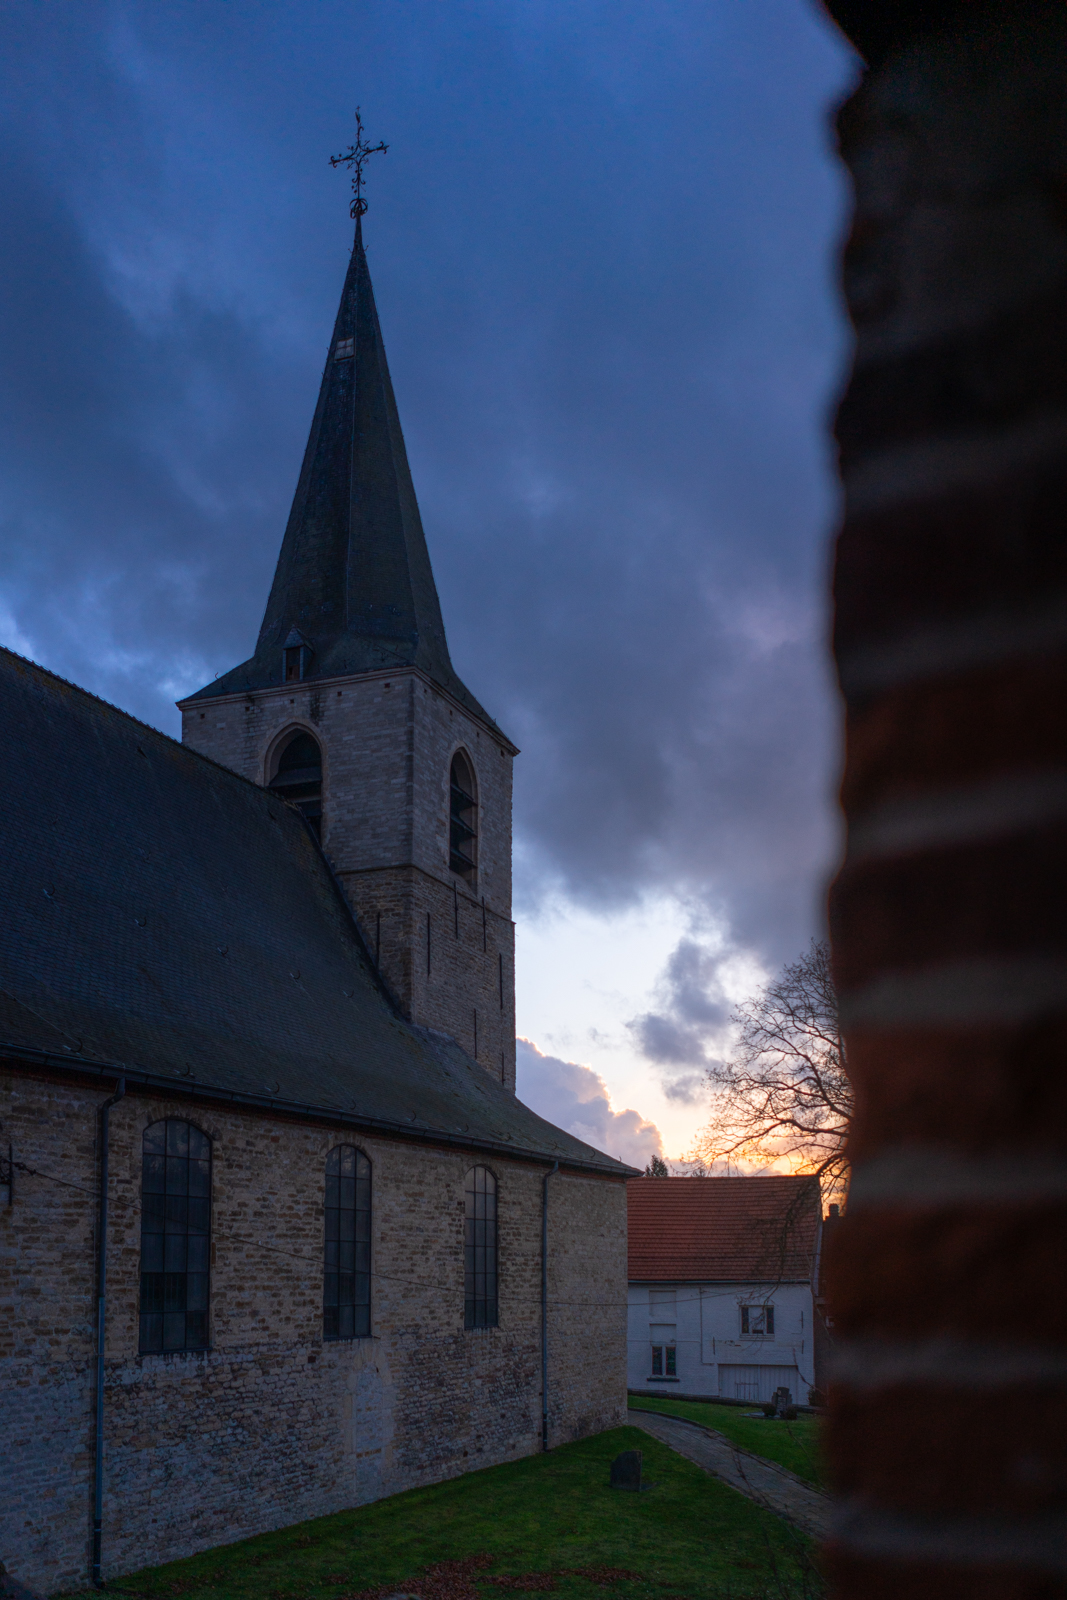 St. Lambertus Church at sunset in Leefdaal, Belgium